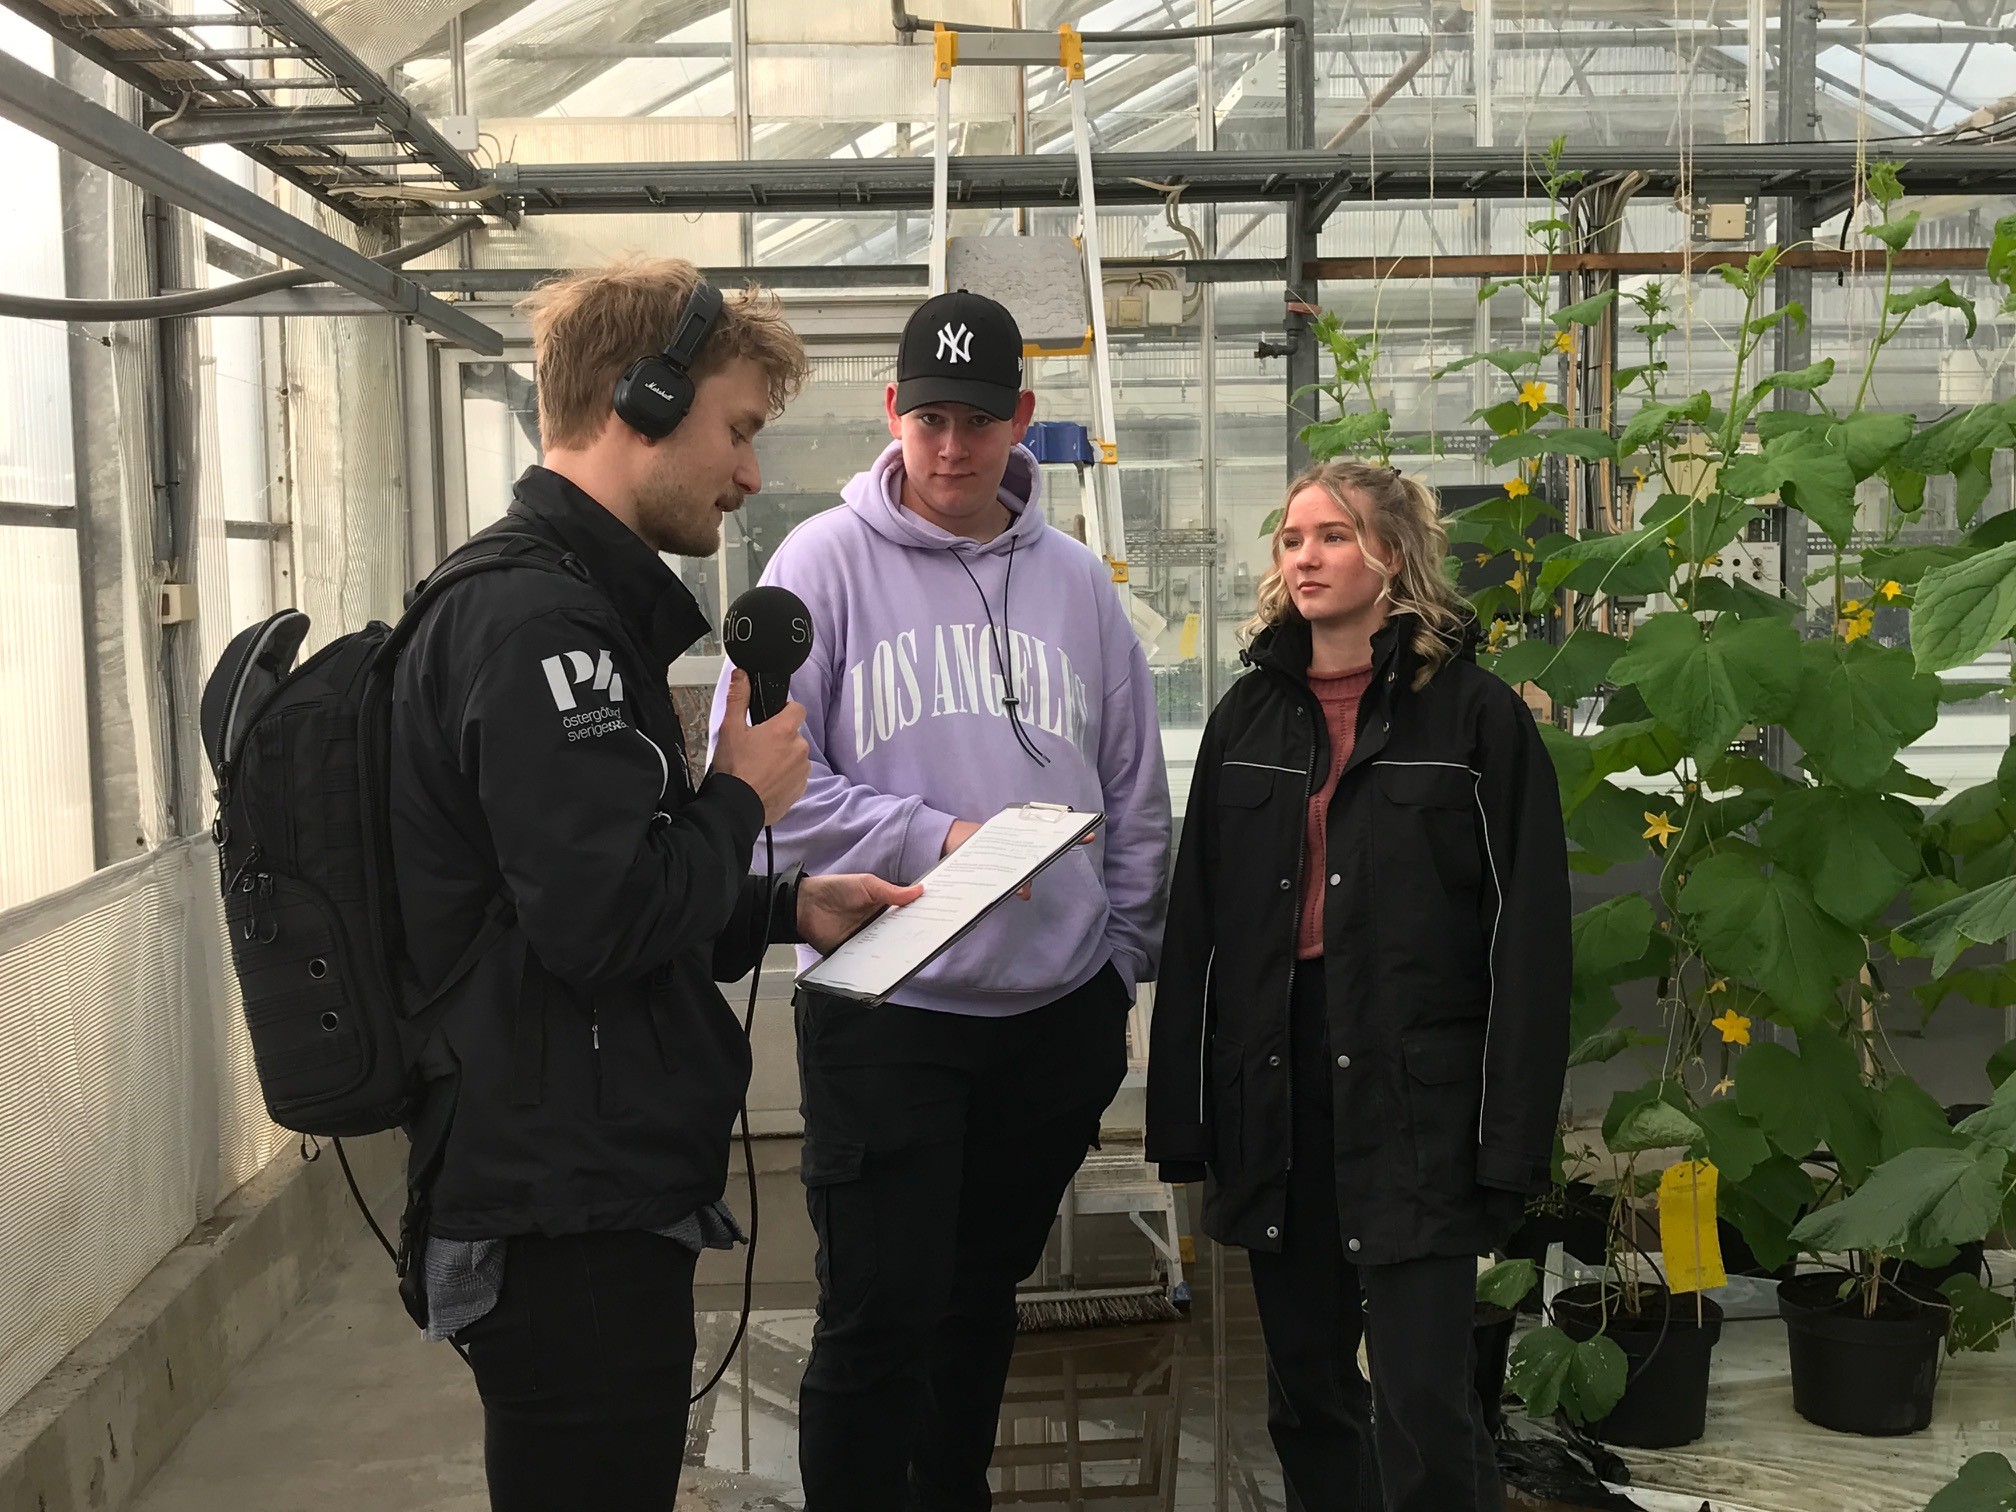 En radioreporter står i ett växthus och intervjuar en kille och en tjej